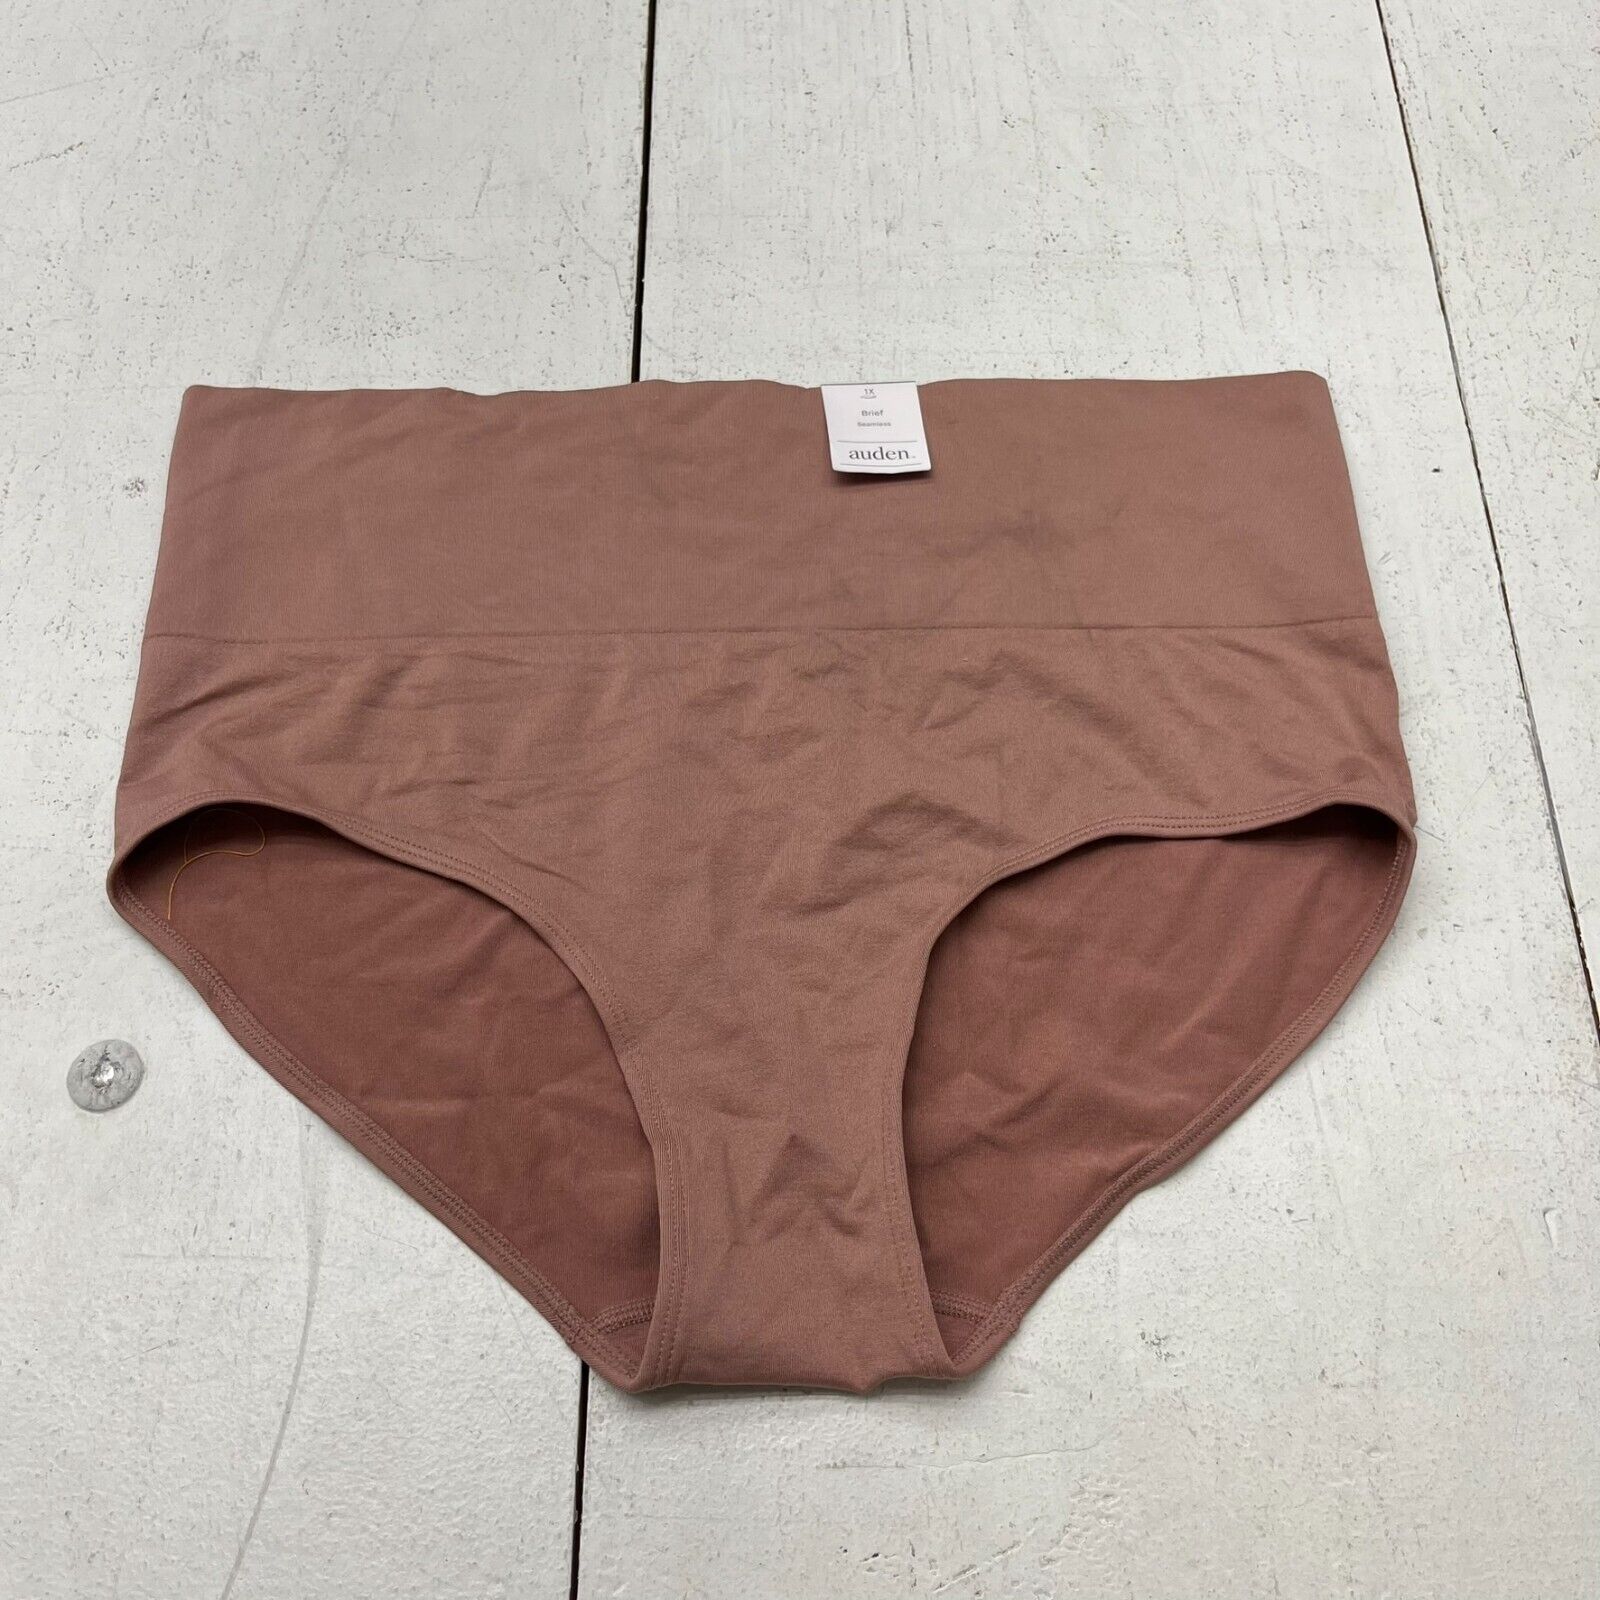 Auden Rust Seamless Brief Underwear Women's Size 1X NEW